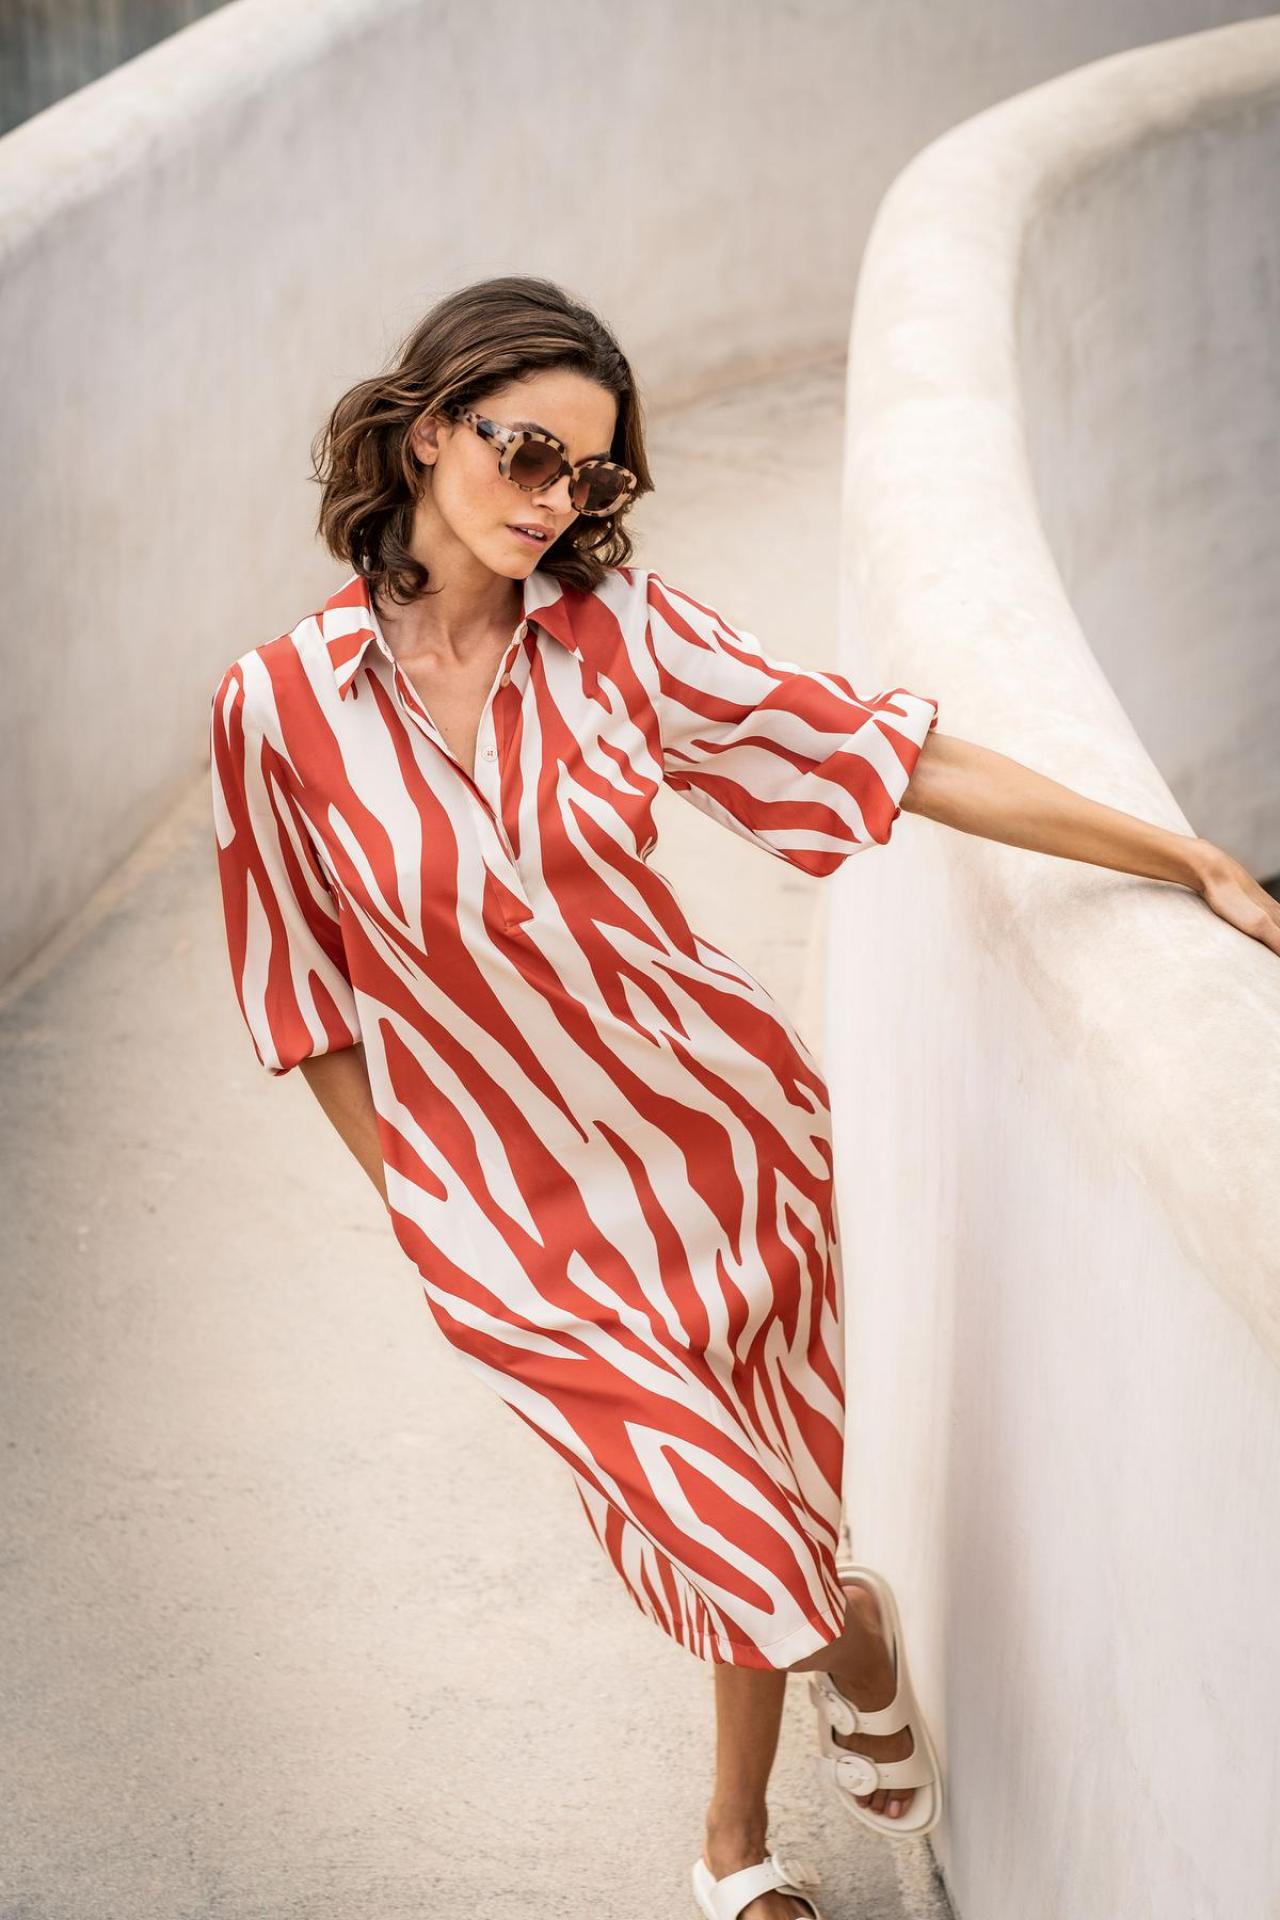 Comfortabele jurk met polosluiting en rood-witte zebrastrepen (159,90 euro), van Terre Bleue.